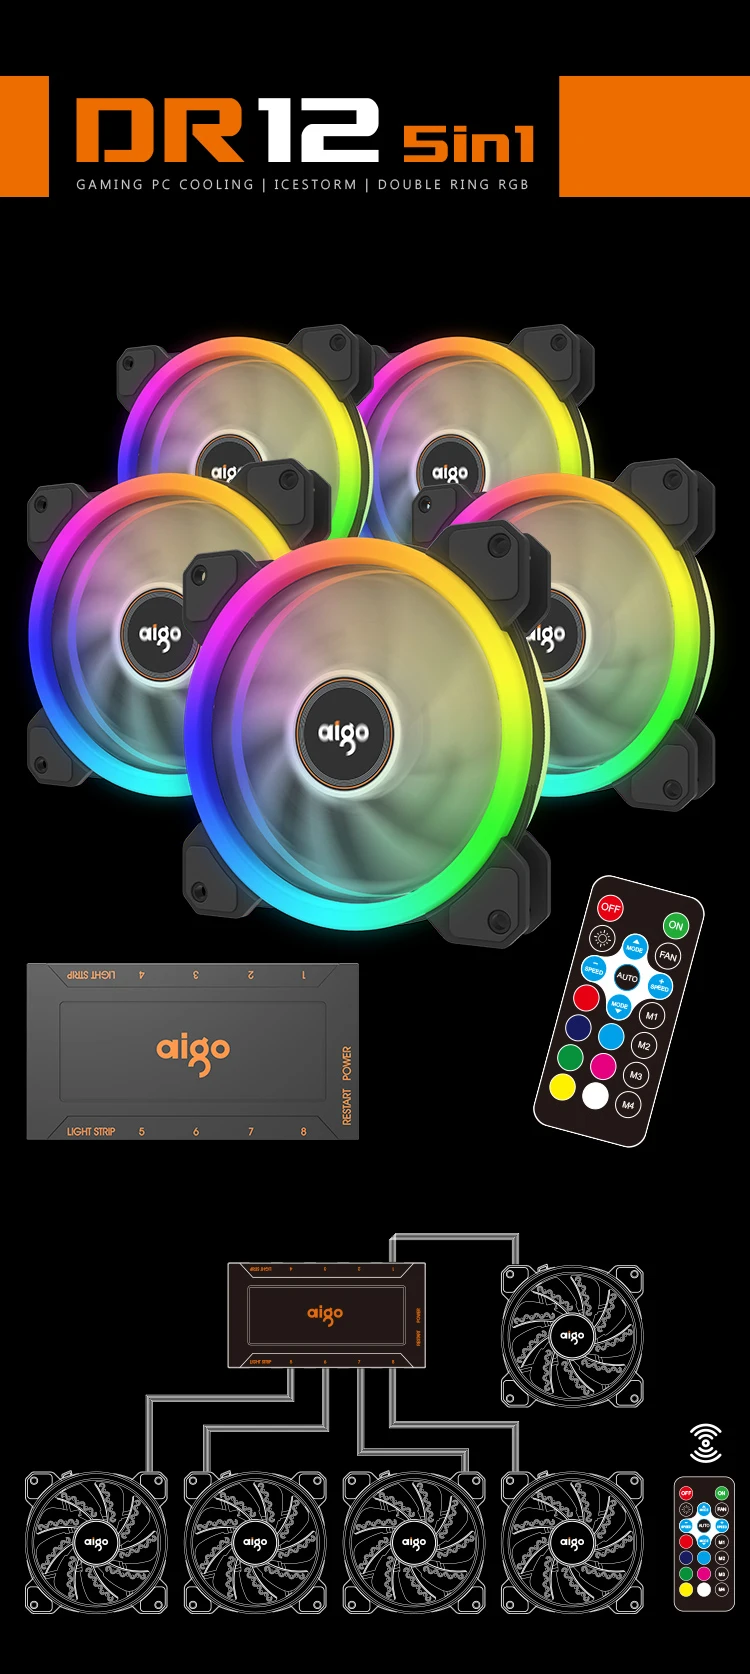 Aigo DR12 чехол для ПК Вентилятор 120 мм бесшумный Радиатор ИК пульт дистанционного управления Регулировка светодиодный светильник RGB бесшумный игровой чехол-вентилятор